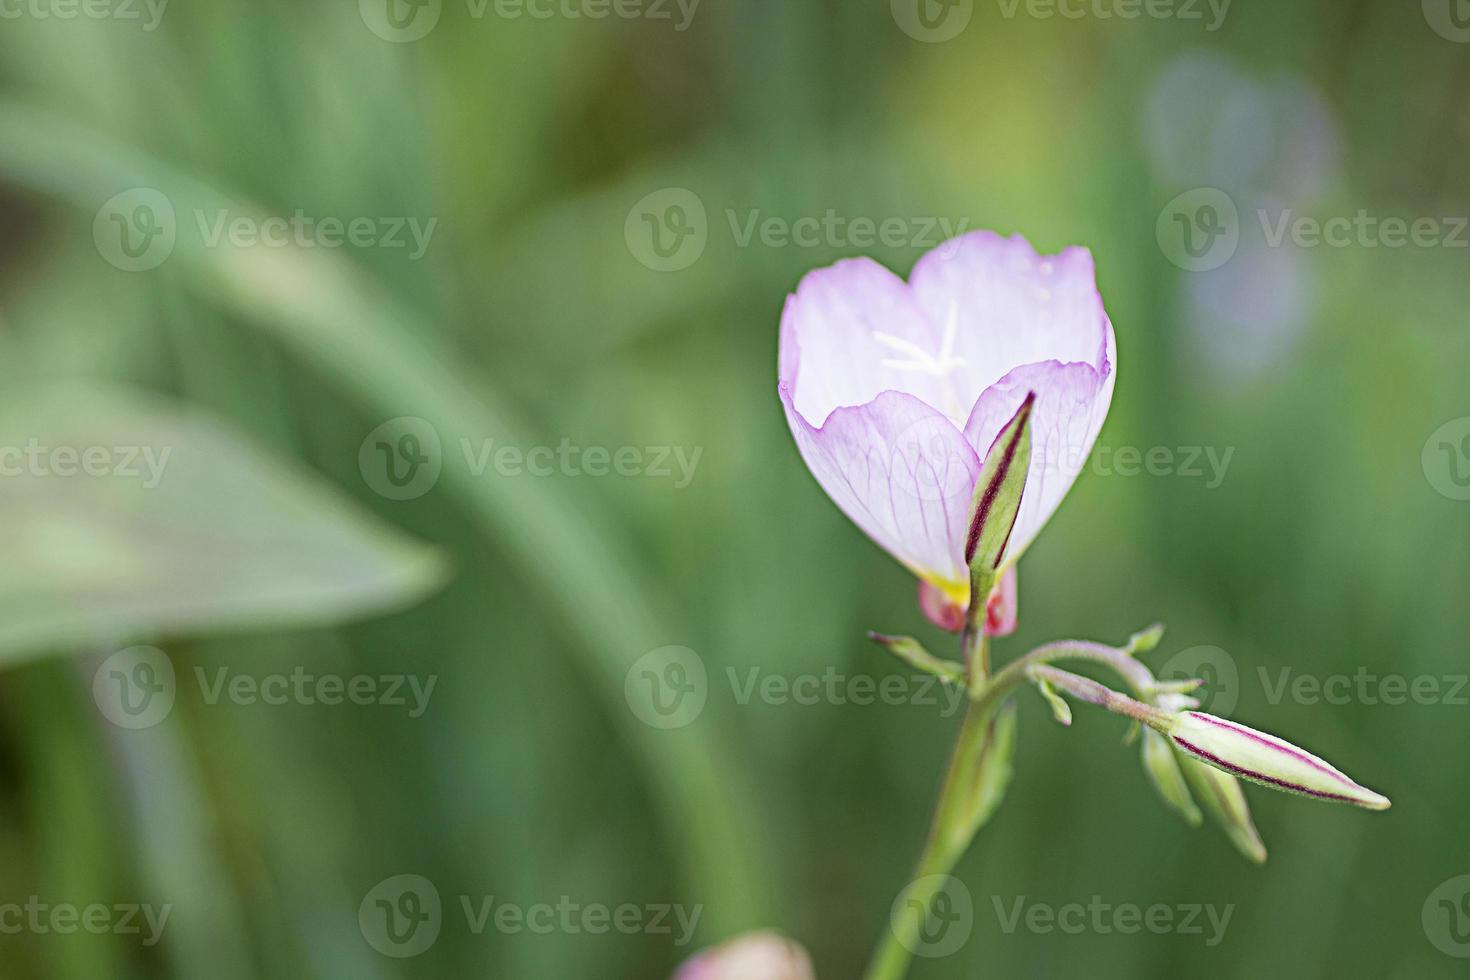 amapola blanca y morada (papaver) 1342264 Foto de stock en Vecteezy